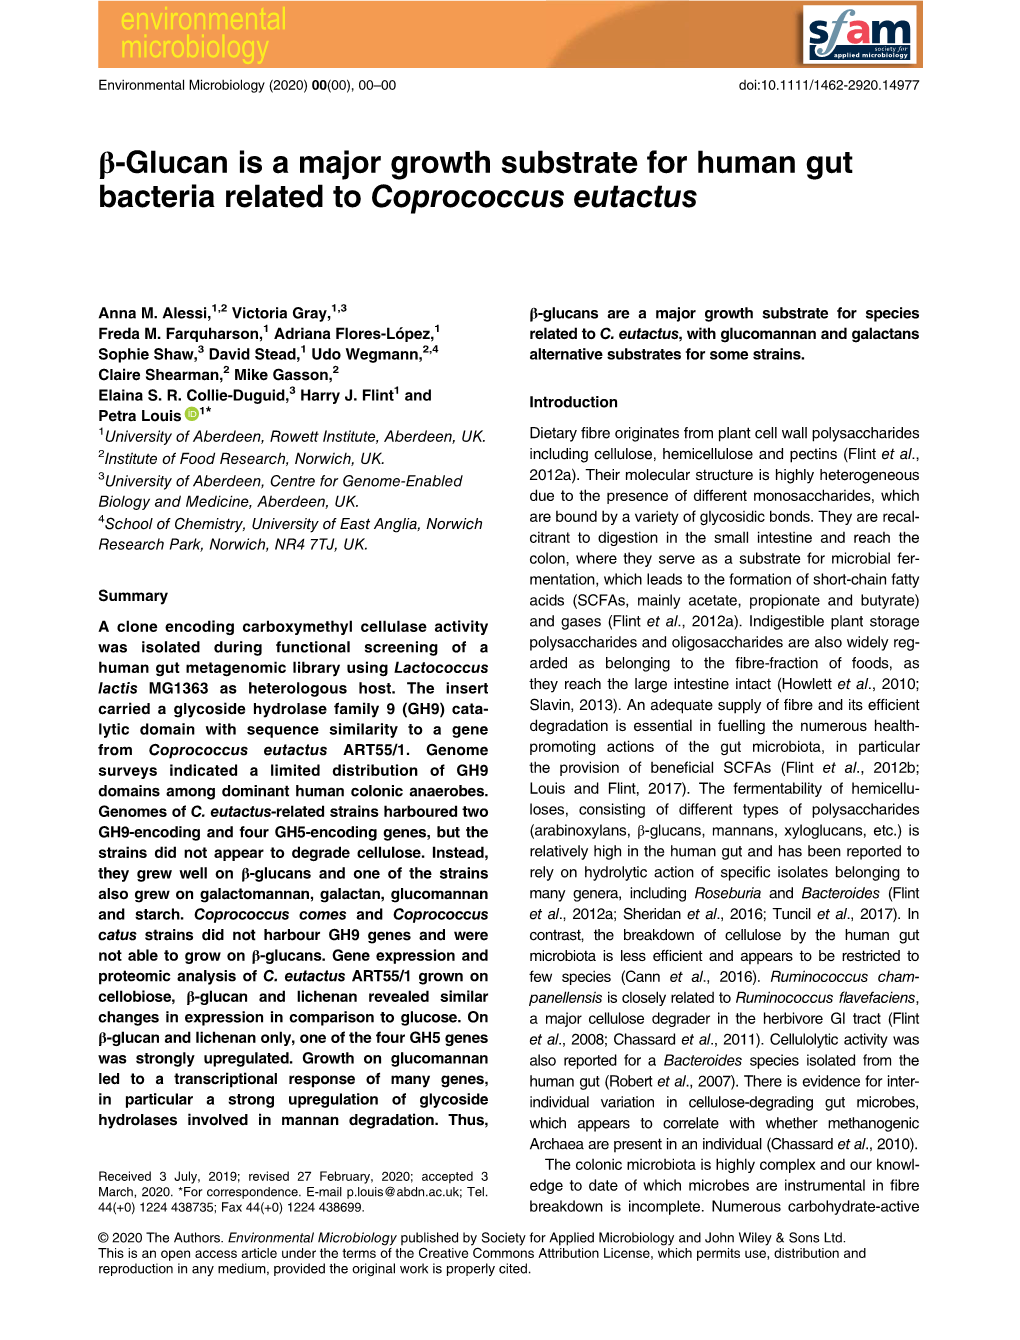 Β‐Glucan Is a Major Growth Substrate for Human Gut Bacteria Related To